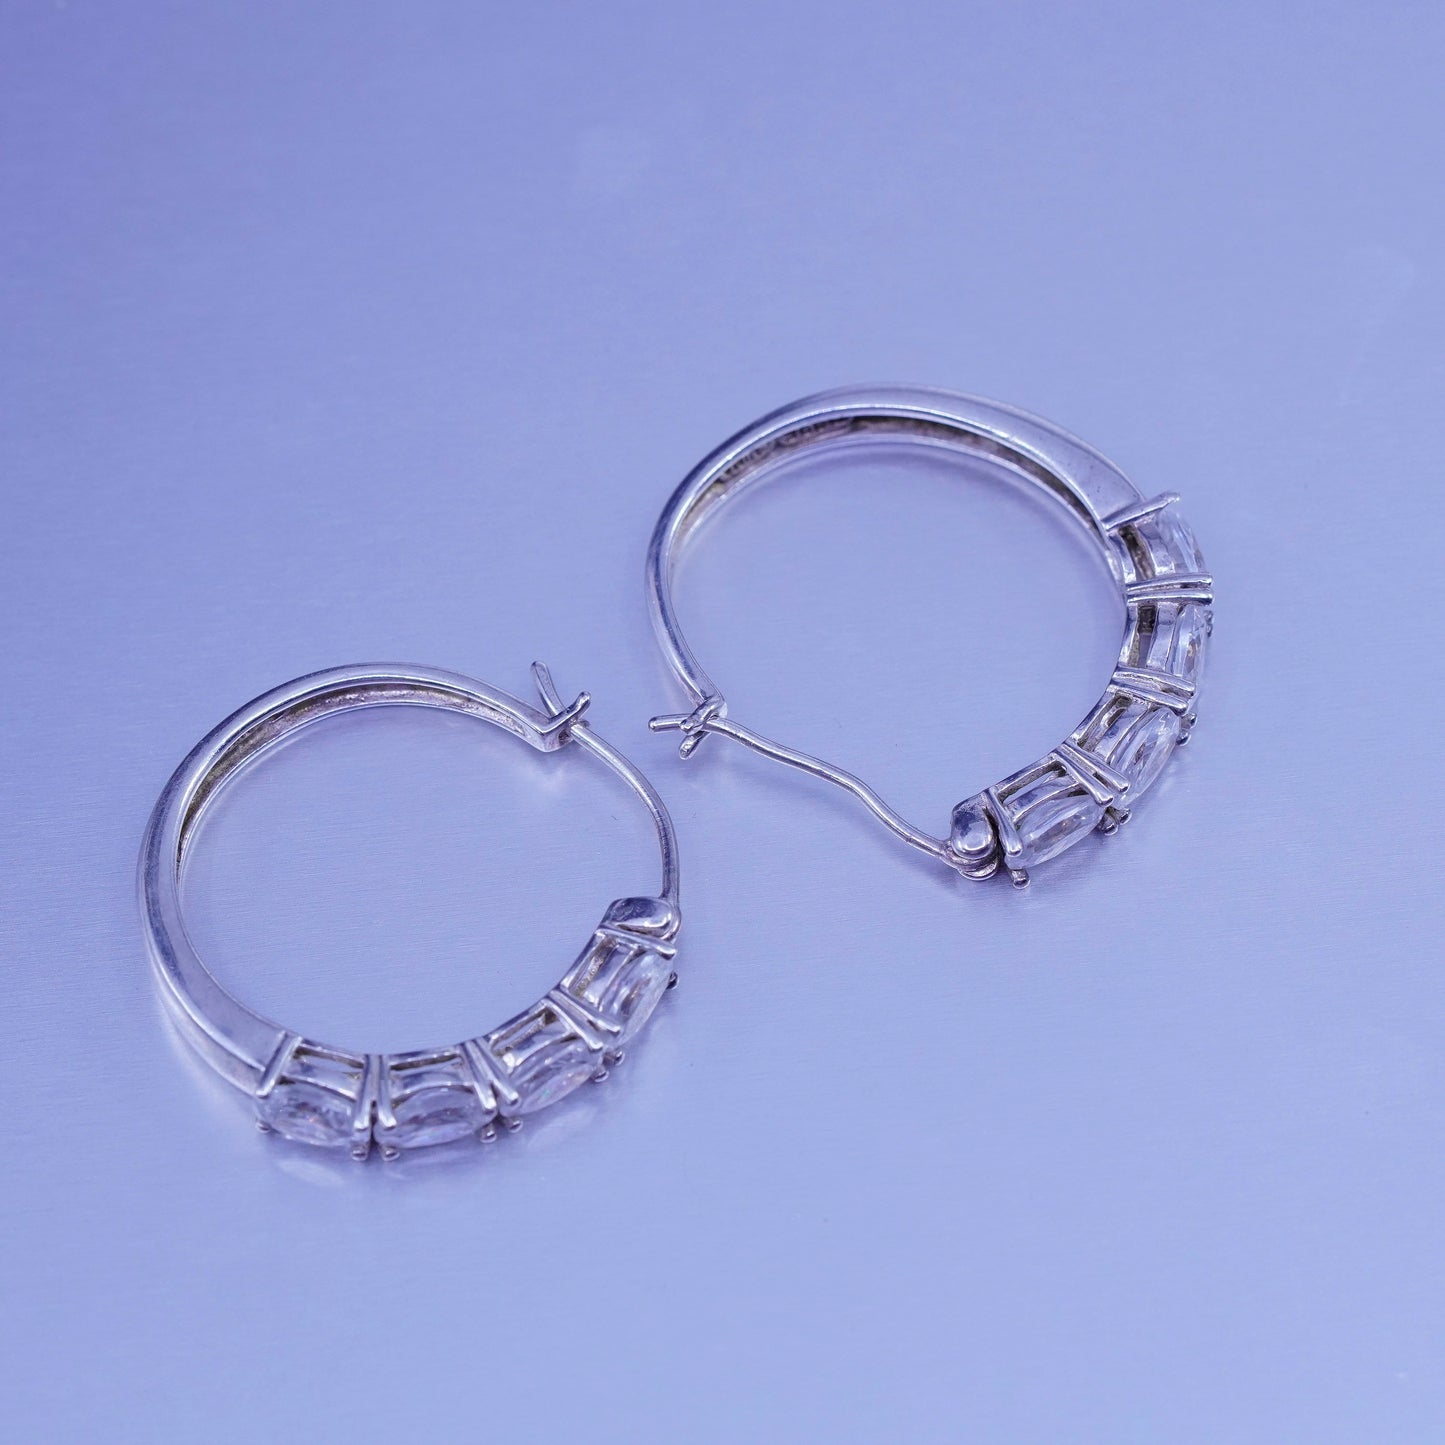 1”, vintage Sterling silver handmade earrings, 925 Huggie hoops with Cz